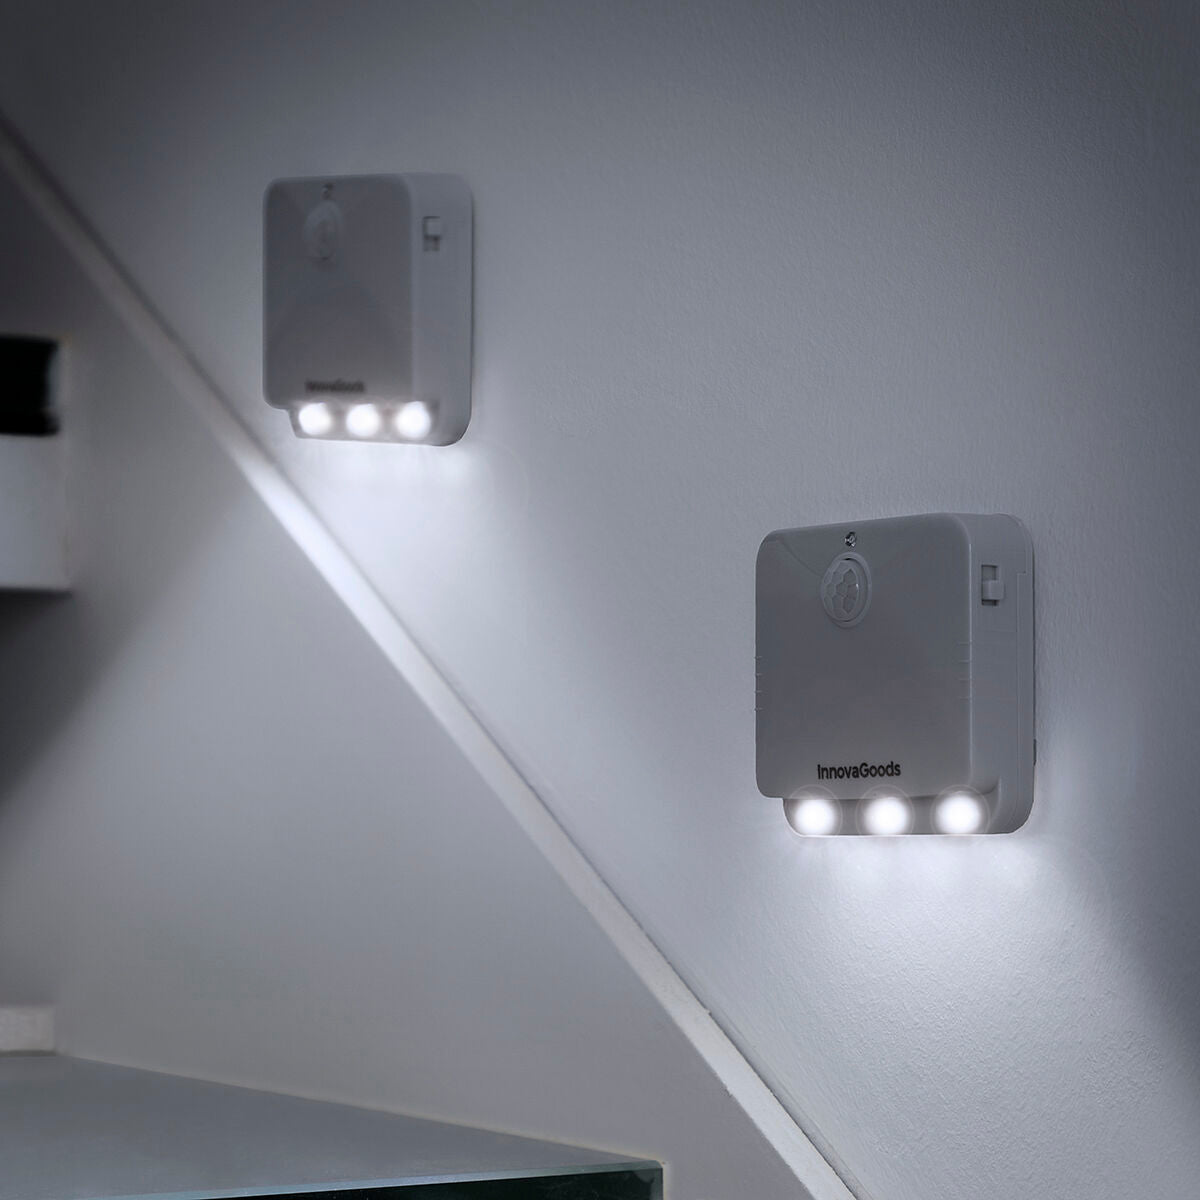 Kaufe Lumtoo InnovaGoods LED-Lampe mit Bewegungssensor, 2 Stück bei AWK Flagship um € 26.00